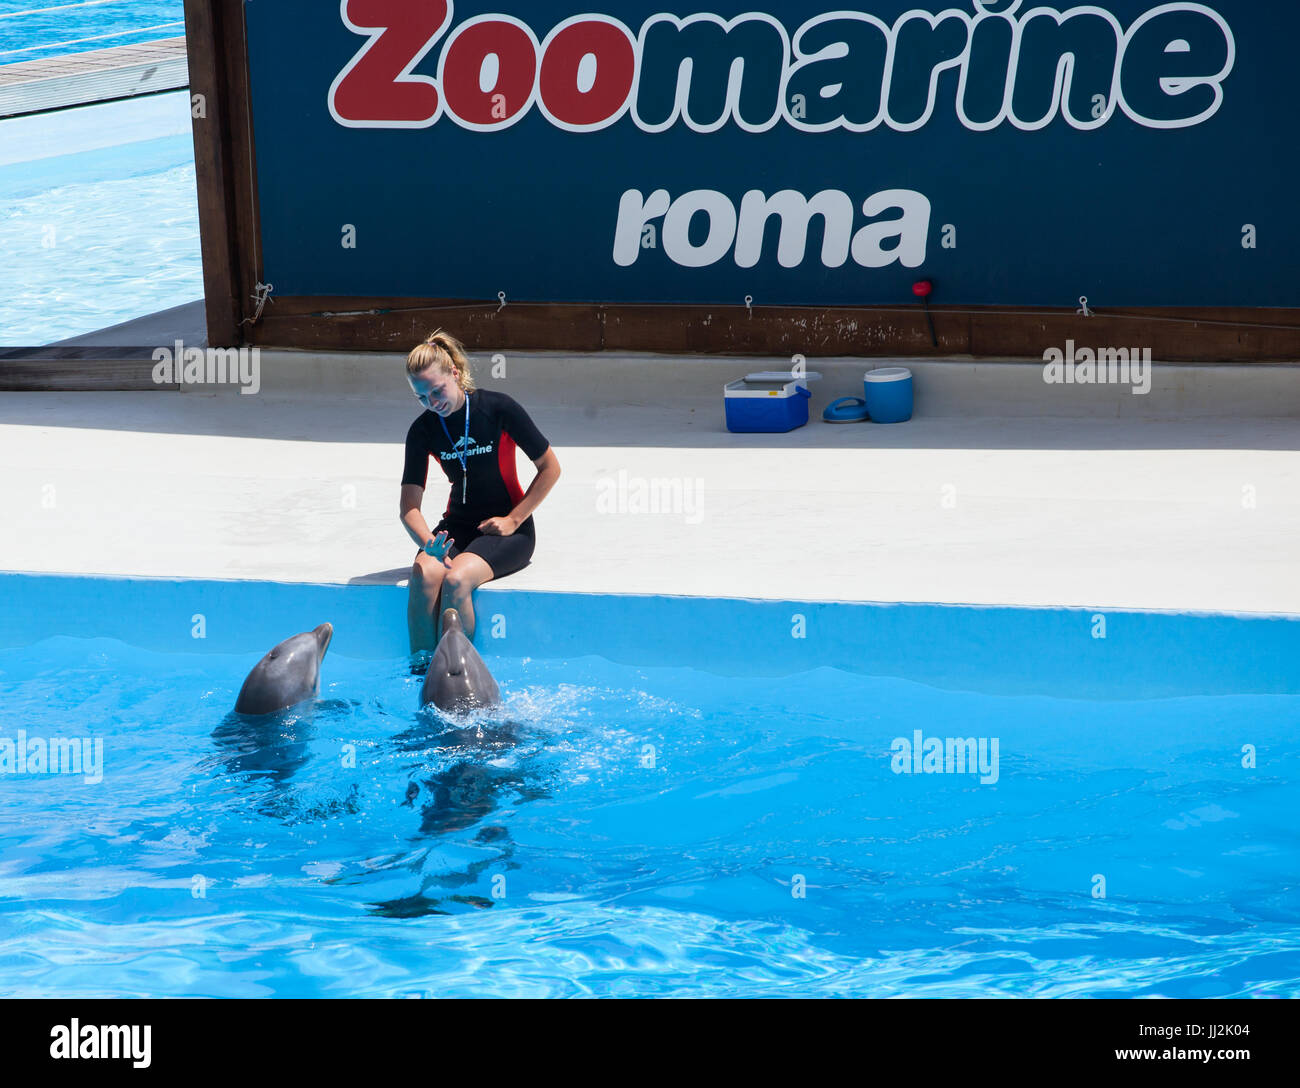 Torvaianica, Italia - 24 giugno 2013: acqua chiara con incredibile  spettacolo di delfini algarve parco a tema acquatico delfinario, oceani di  divertimento. zoomarine è un'acqua Foto stock - Alamy